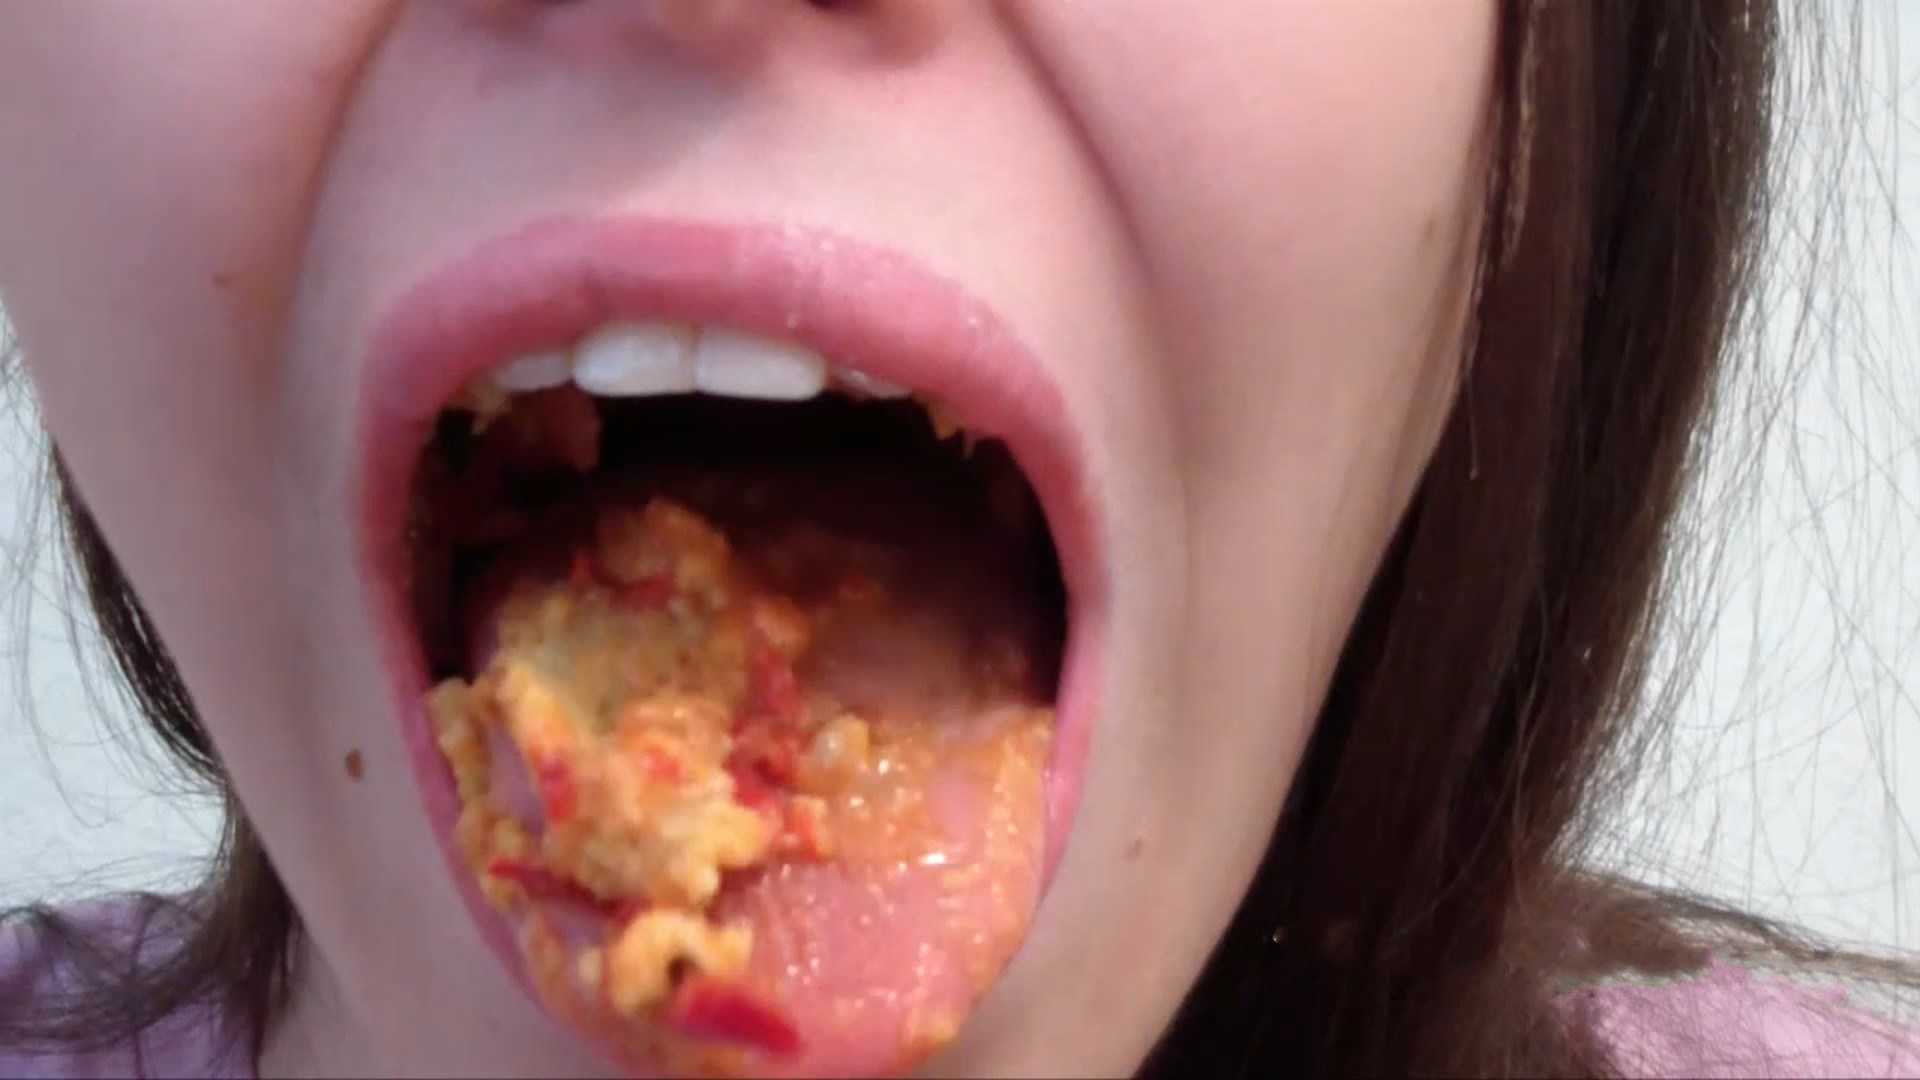 Alina eats and shitting in mouth toilet slave – PooAlina | Full HD 1080p | May 20, 2017